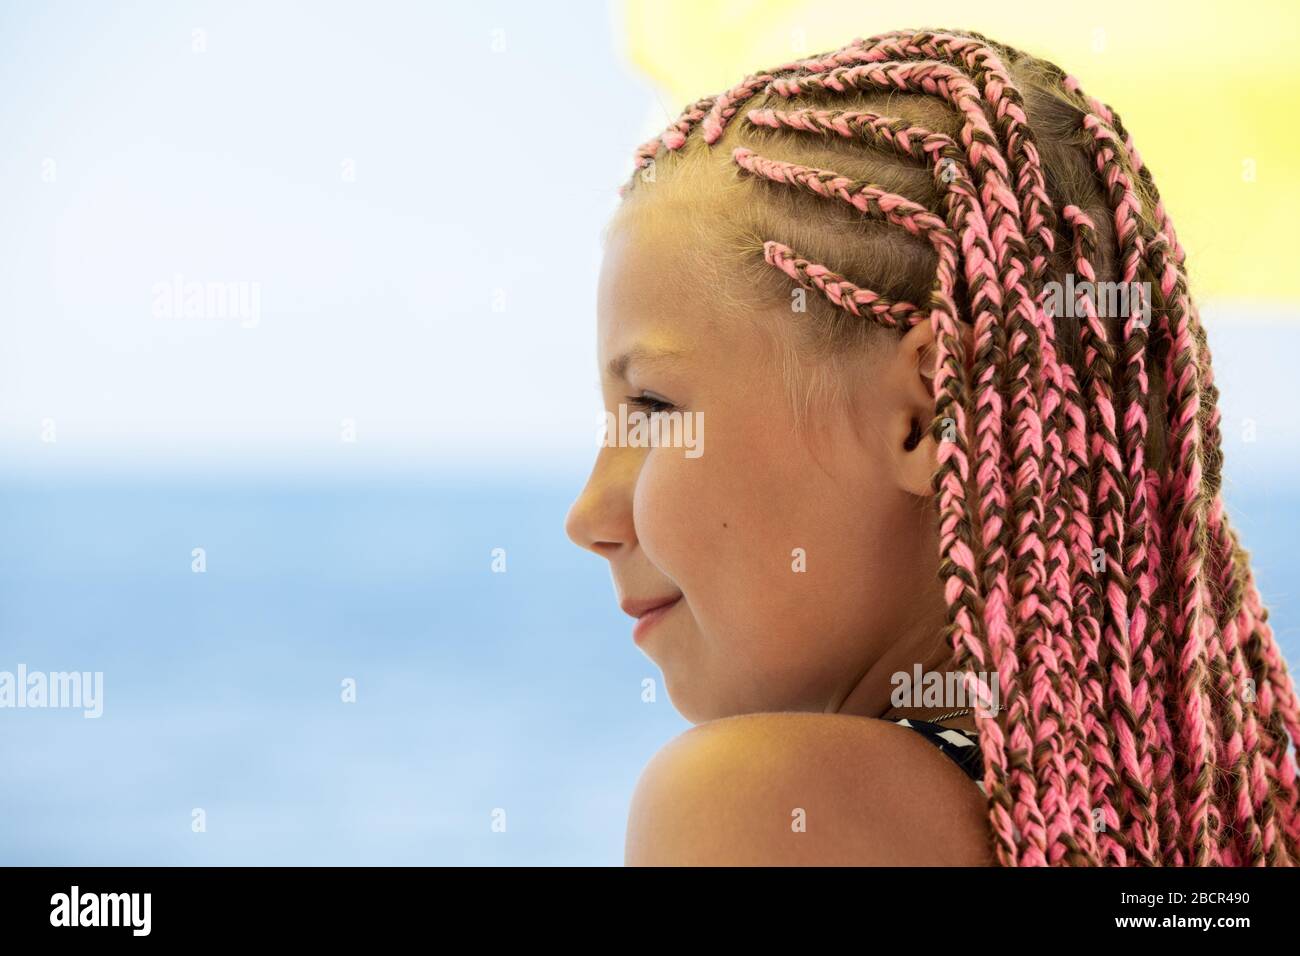 Teenager-Mädchen mit Dreadlocks, Seitenansicht, Copyspace gegen blaues Meer  Stockfotografie - Alamy